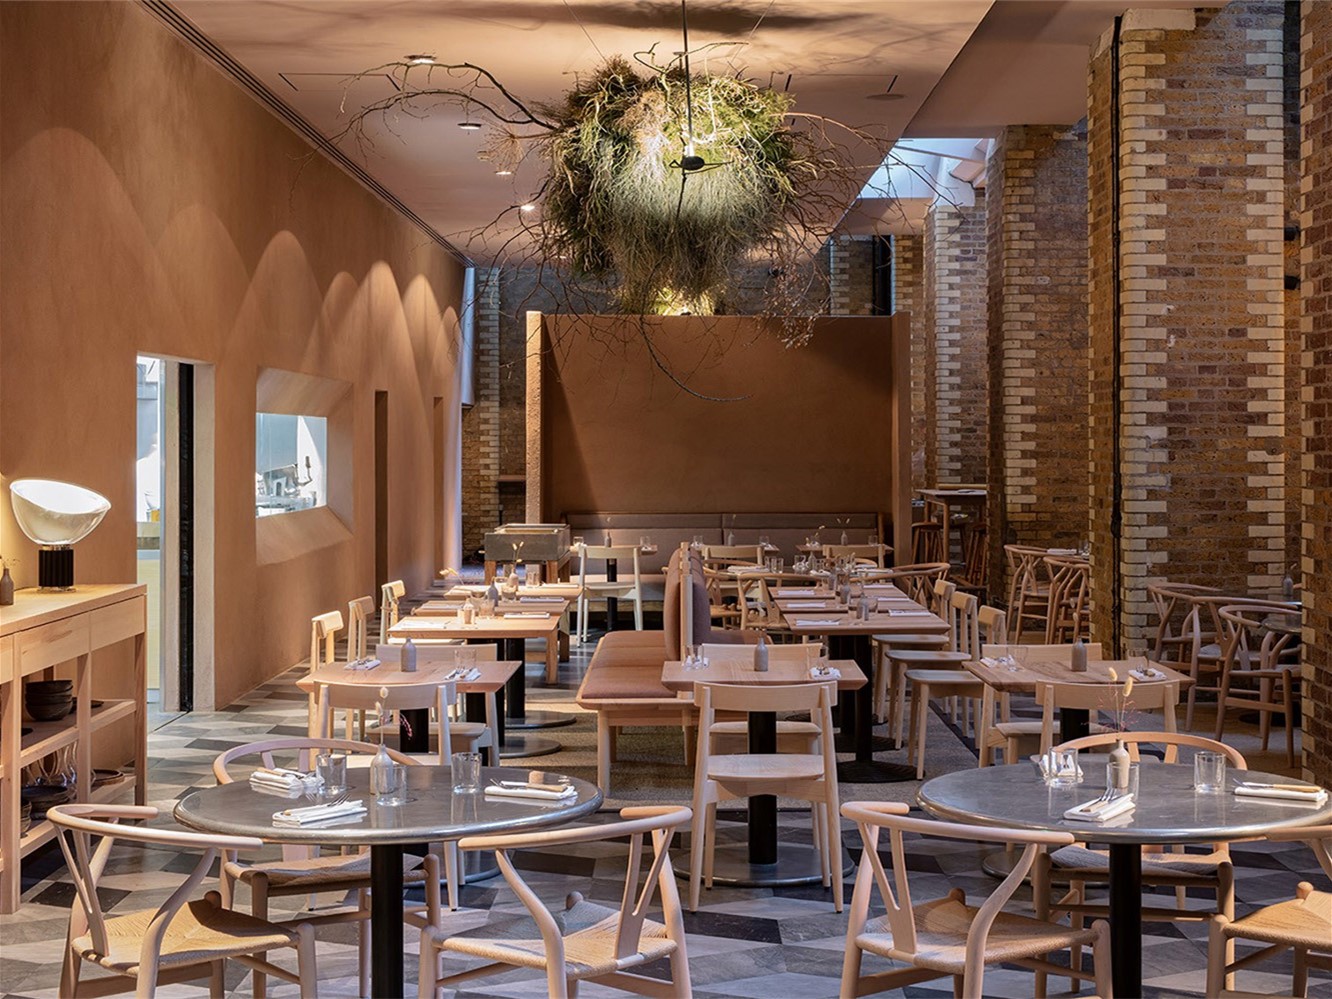 澳门伦敦人的丘吉尔餐厅为饕客带来英式用餐体验 - BANG!